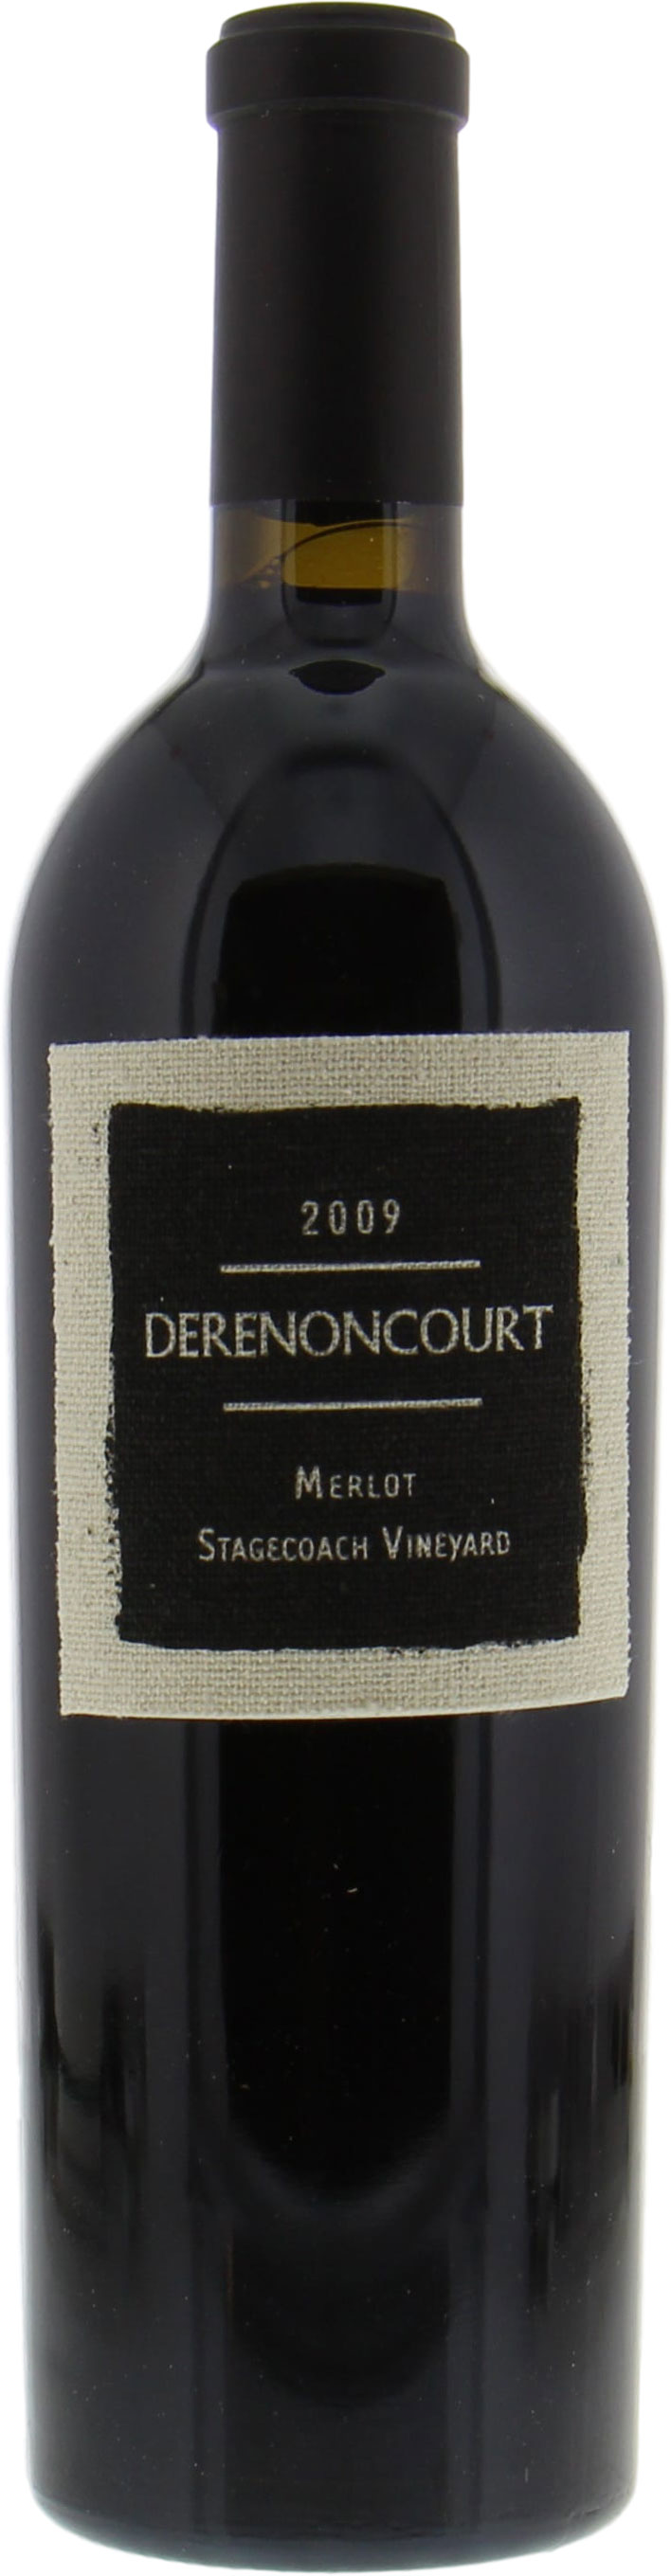 Derenoncourt  - Merlot Stagecoach Vineyard 2009 Perfect